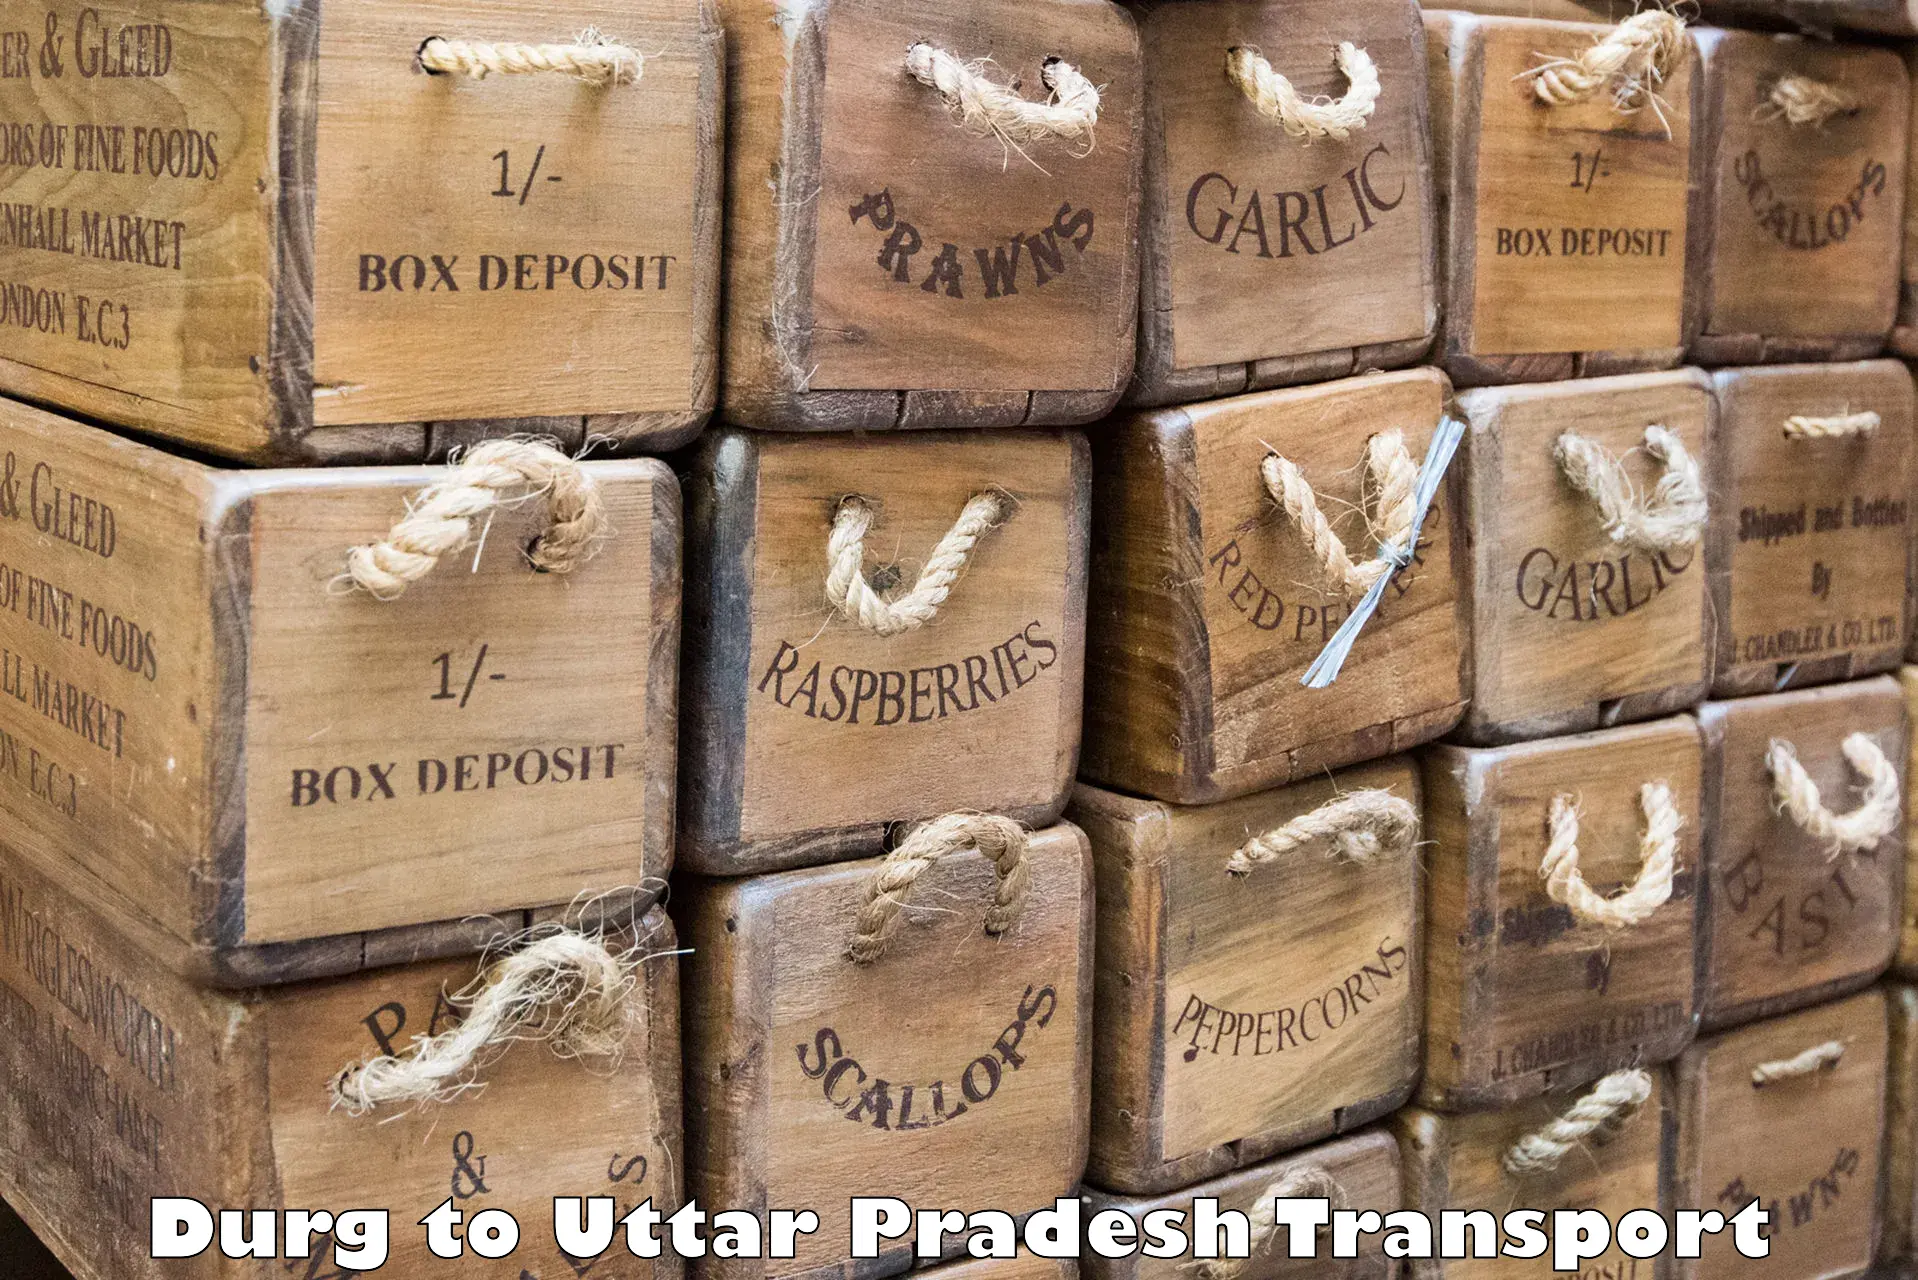 Parcel transport services Durg to Domariyaganj